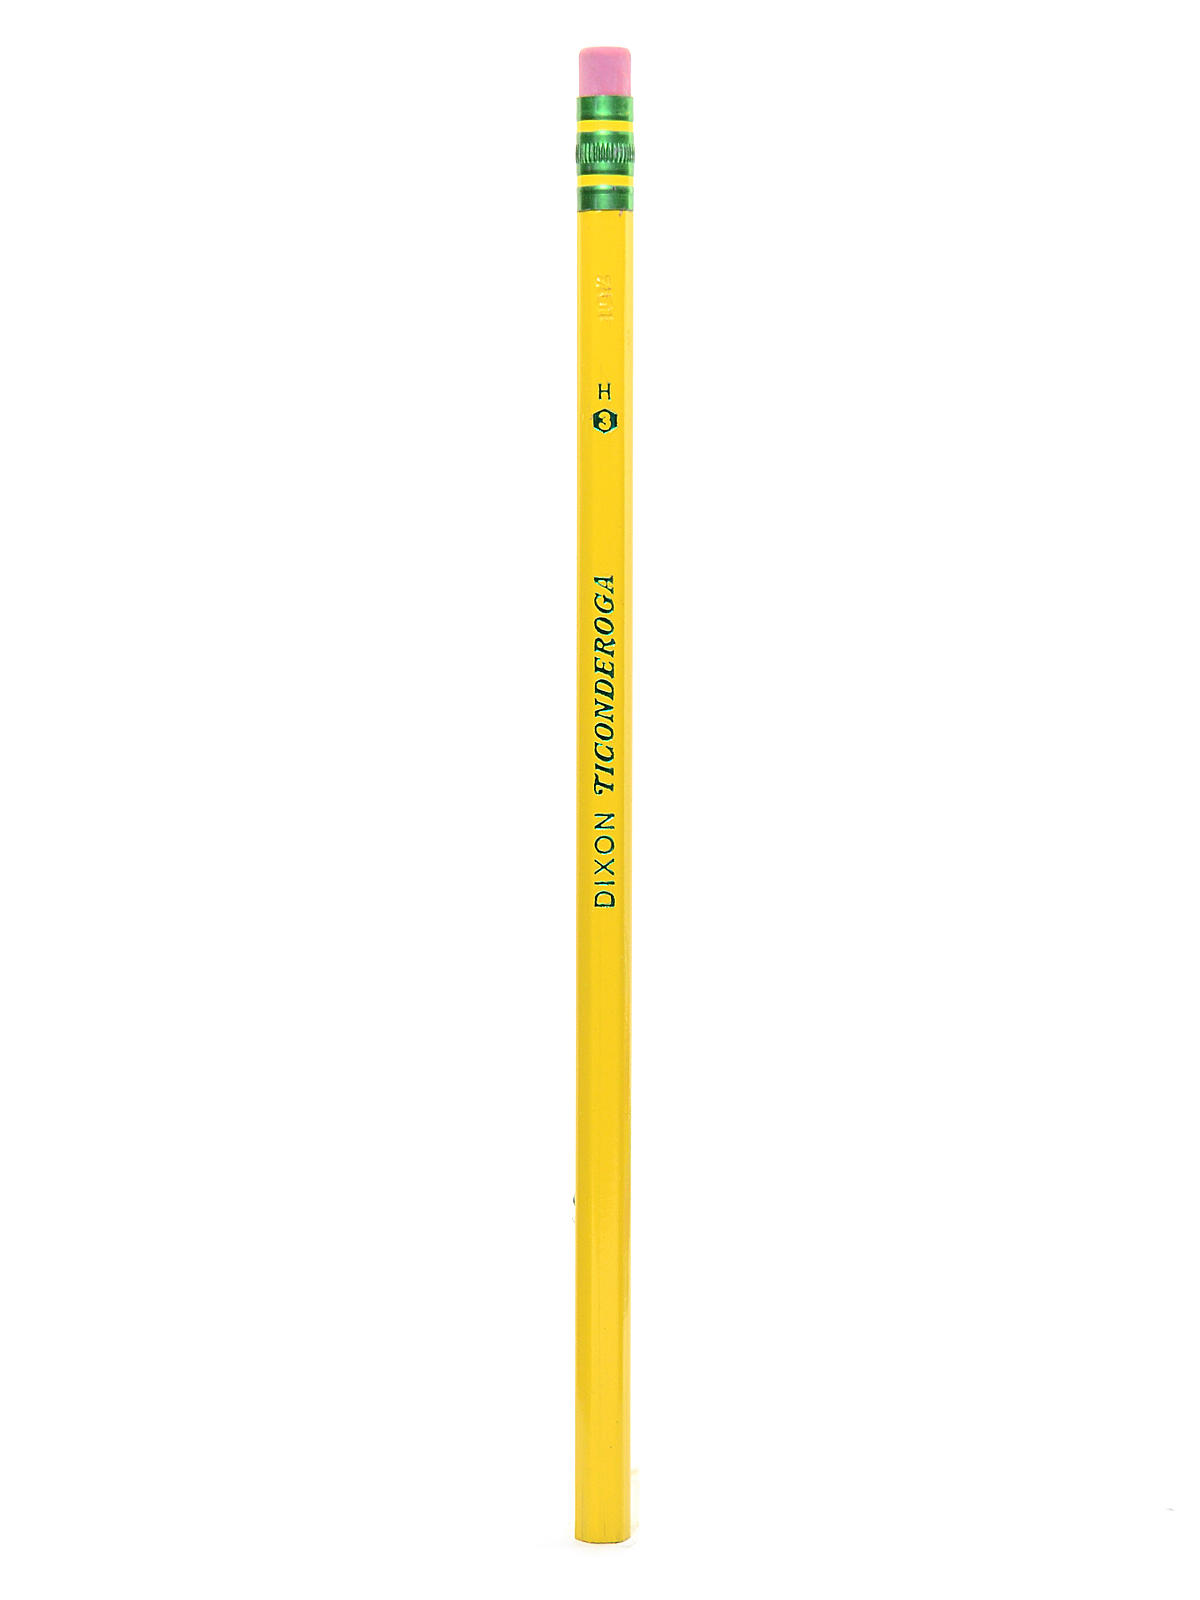 Ticonderoga Pencils No. 3 Hard